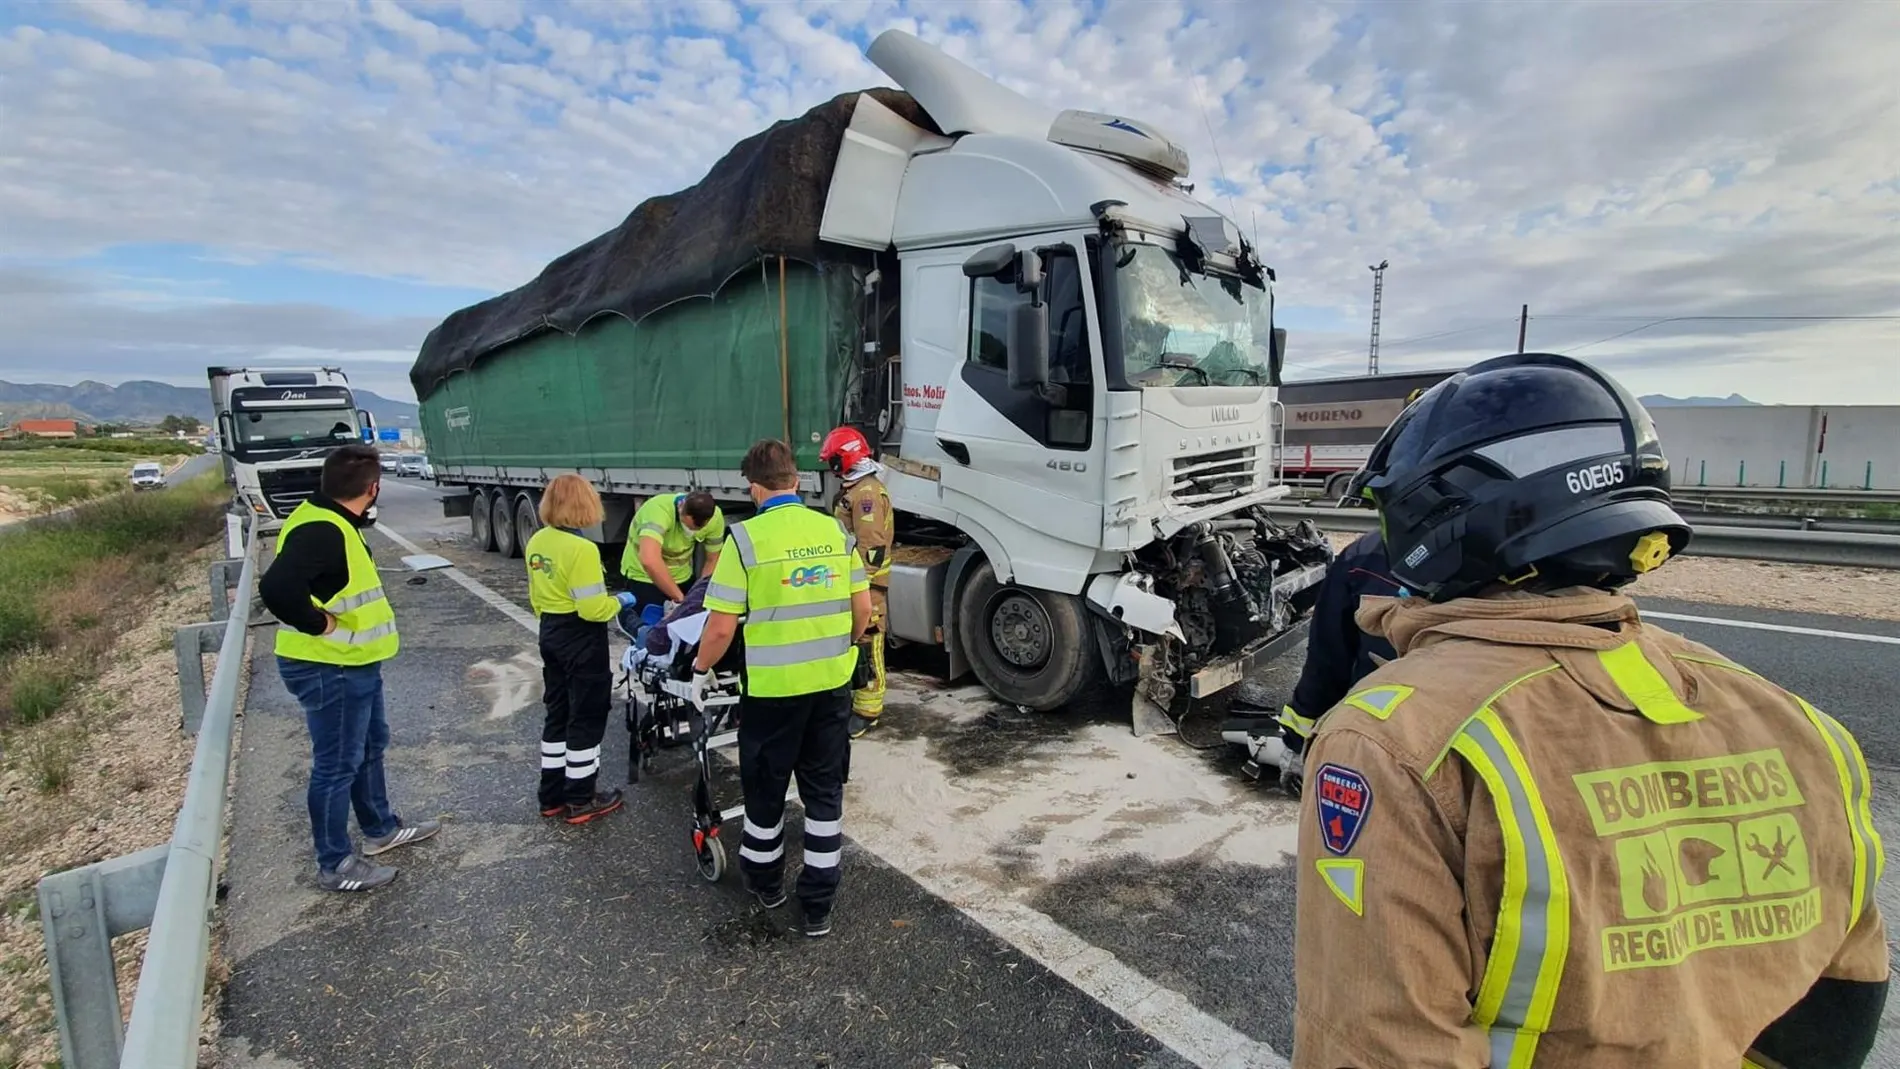 El accidente, en el que ha quedado atrapado un camionero en la cabina, se ha producido pasadas las ocho de la mañana en la A-30, entre Fortuna y Lorquí